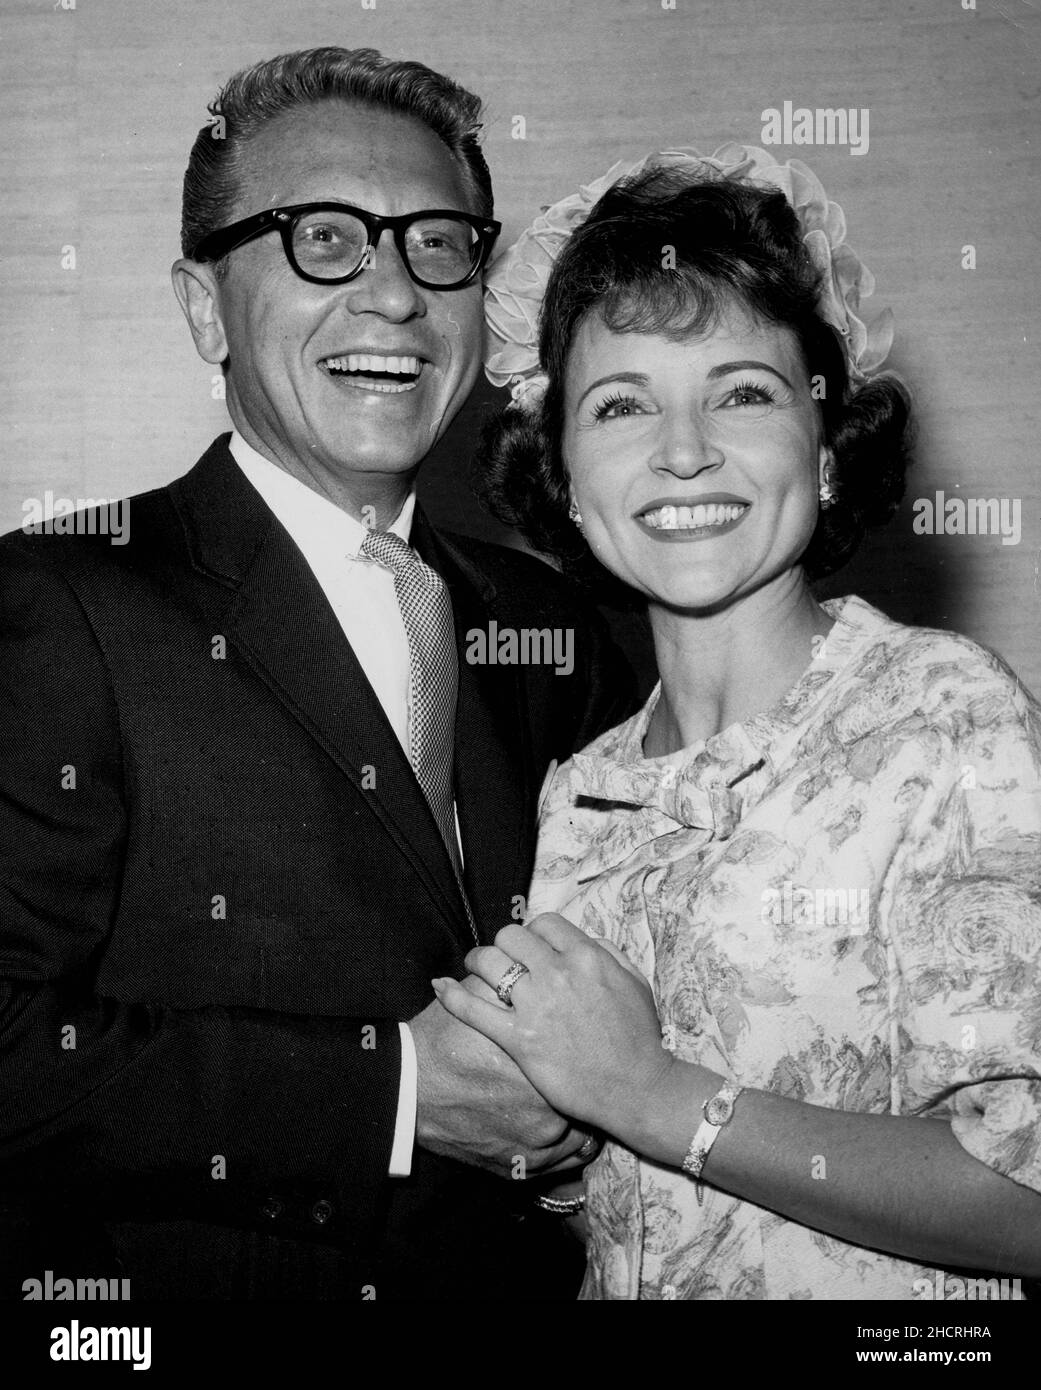 14 giugno 1963 - Las Vegas, Nevada, Stati Uniti - ALLEN LUDDEN e BETTY SORRISO BIANCO il loro giorno di nozze. I due si sposarono al Sands Hotel di Las Vegas. (Credit Image: © Globe Photos/ZUMA Wire) Foto Stock